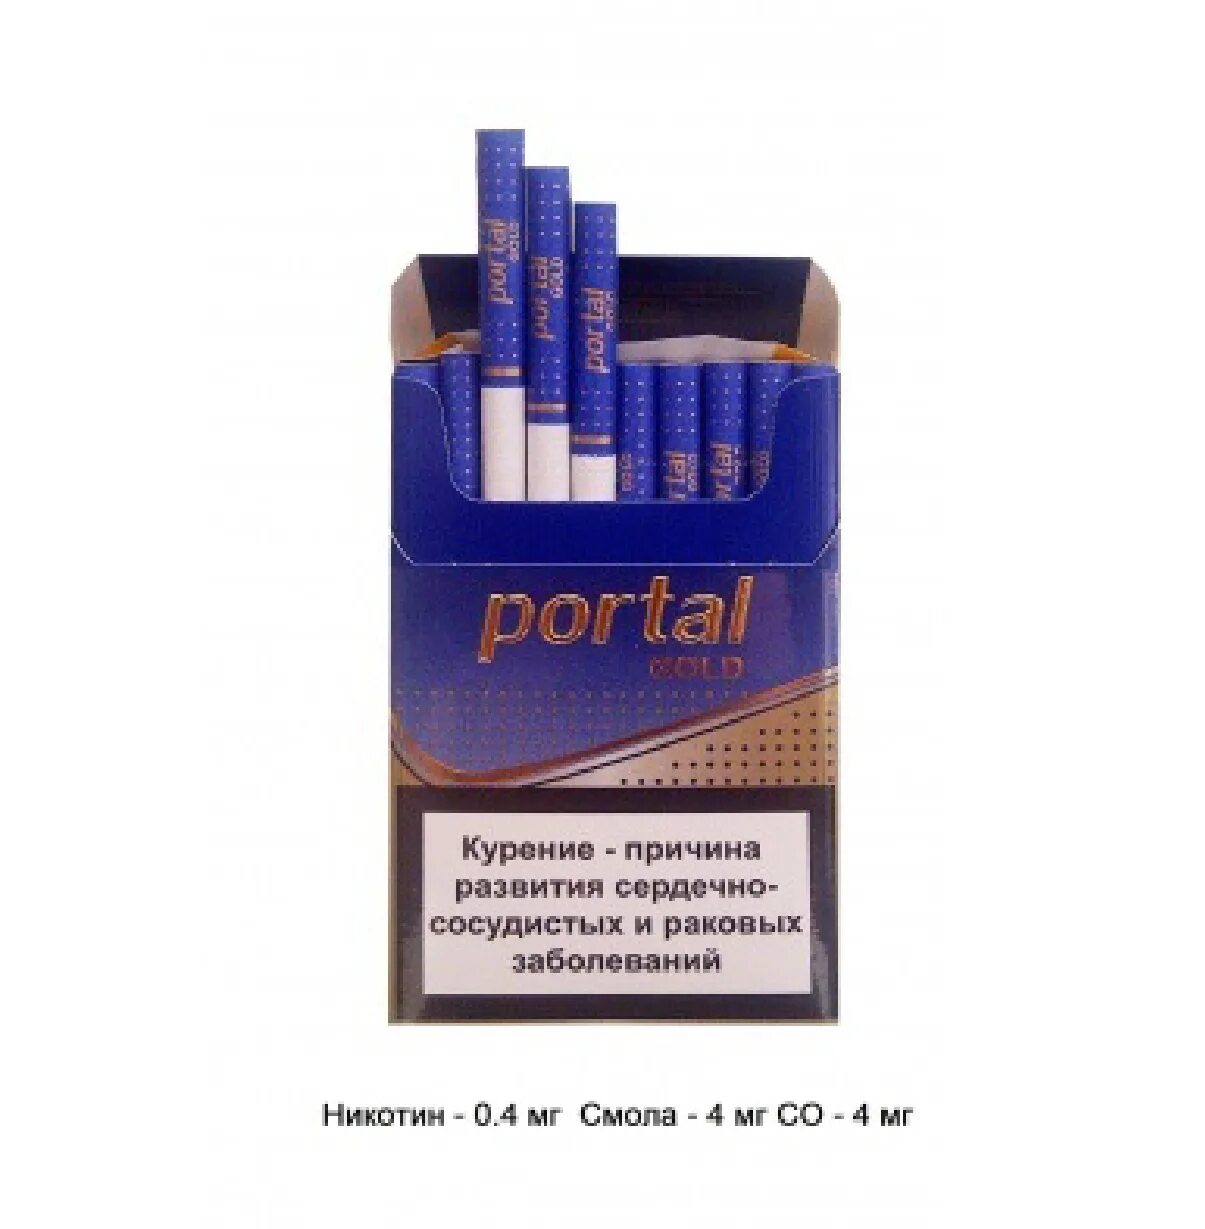 Купить белорусские сигареты розницу. Сигареты LD Compact 100 синие смола никотин. Сигареты Честер компакт синий. Пачка сигарет Вест компакт синий. Смола 0,1 никотин 0,1 сигареты.